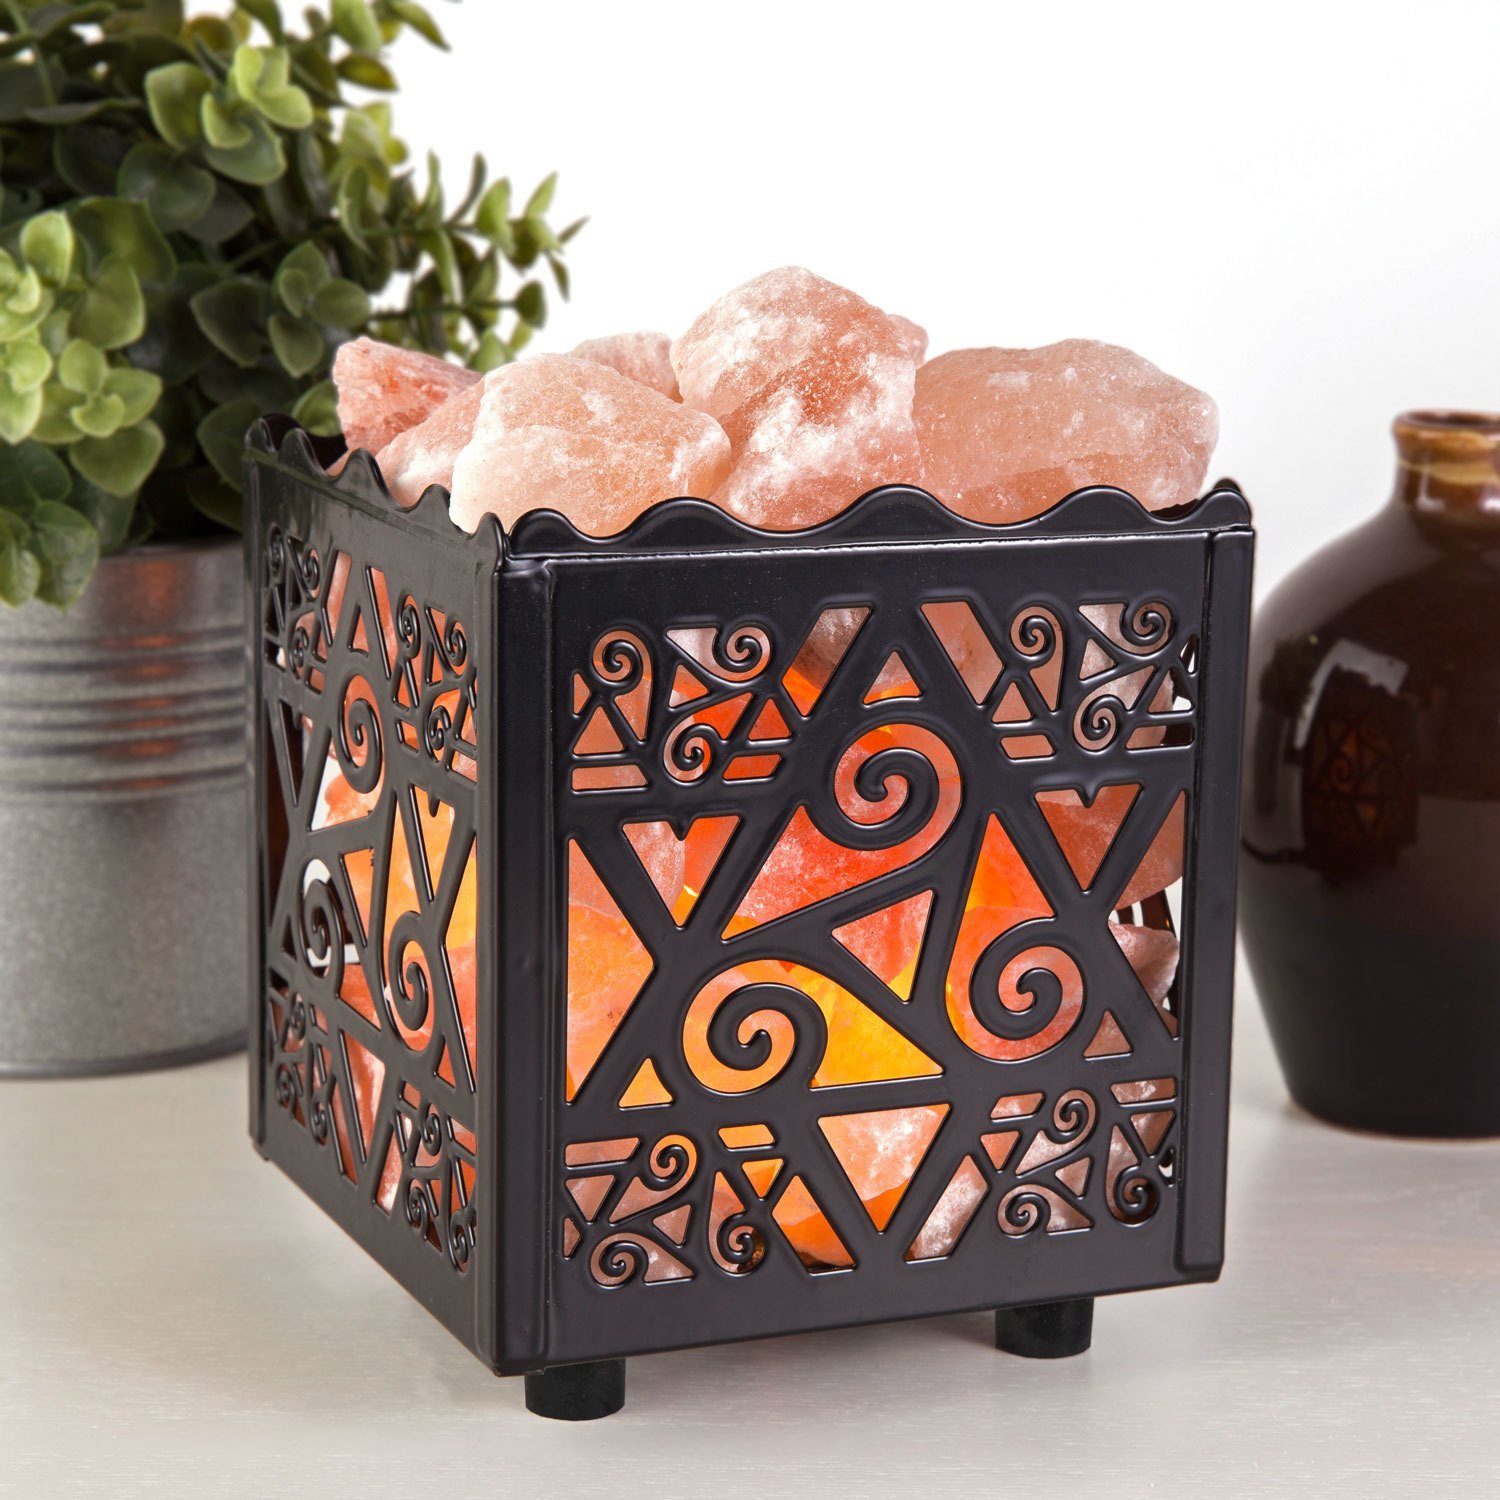 Crystal Decor Natural Himalayan Salt Lamp in Star Design Metal Basket—$14.99!